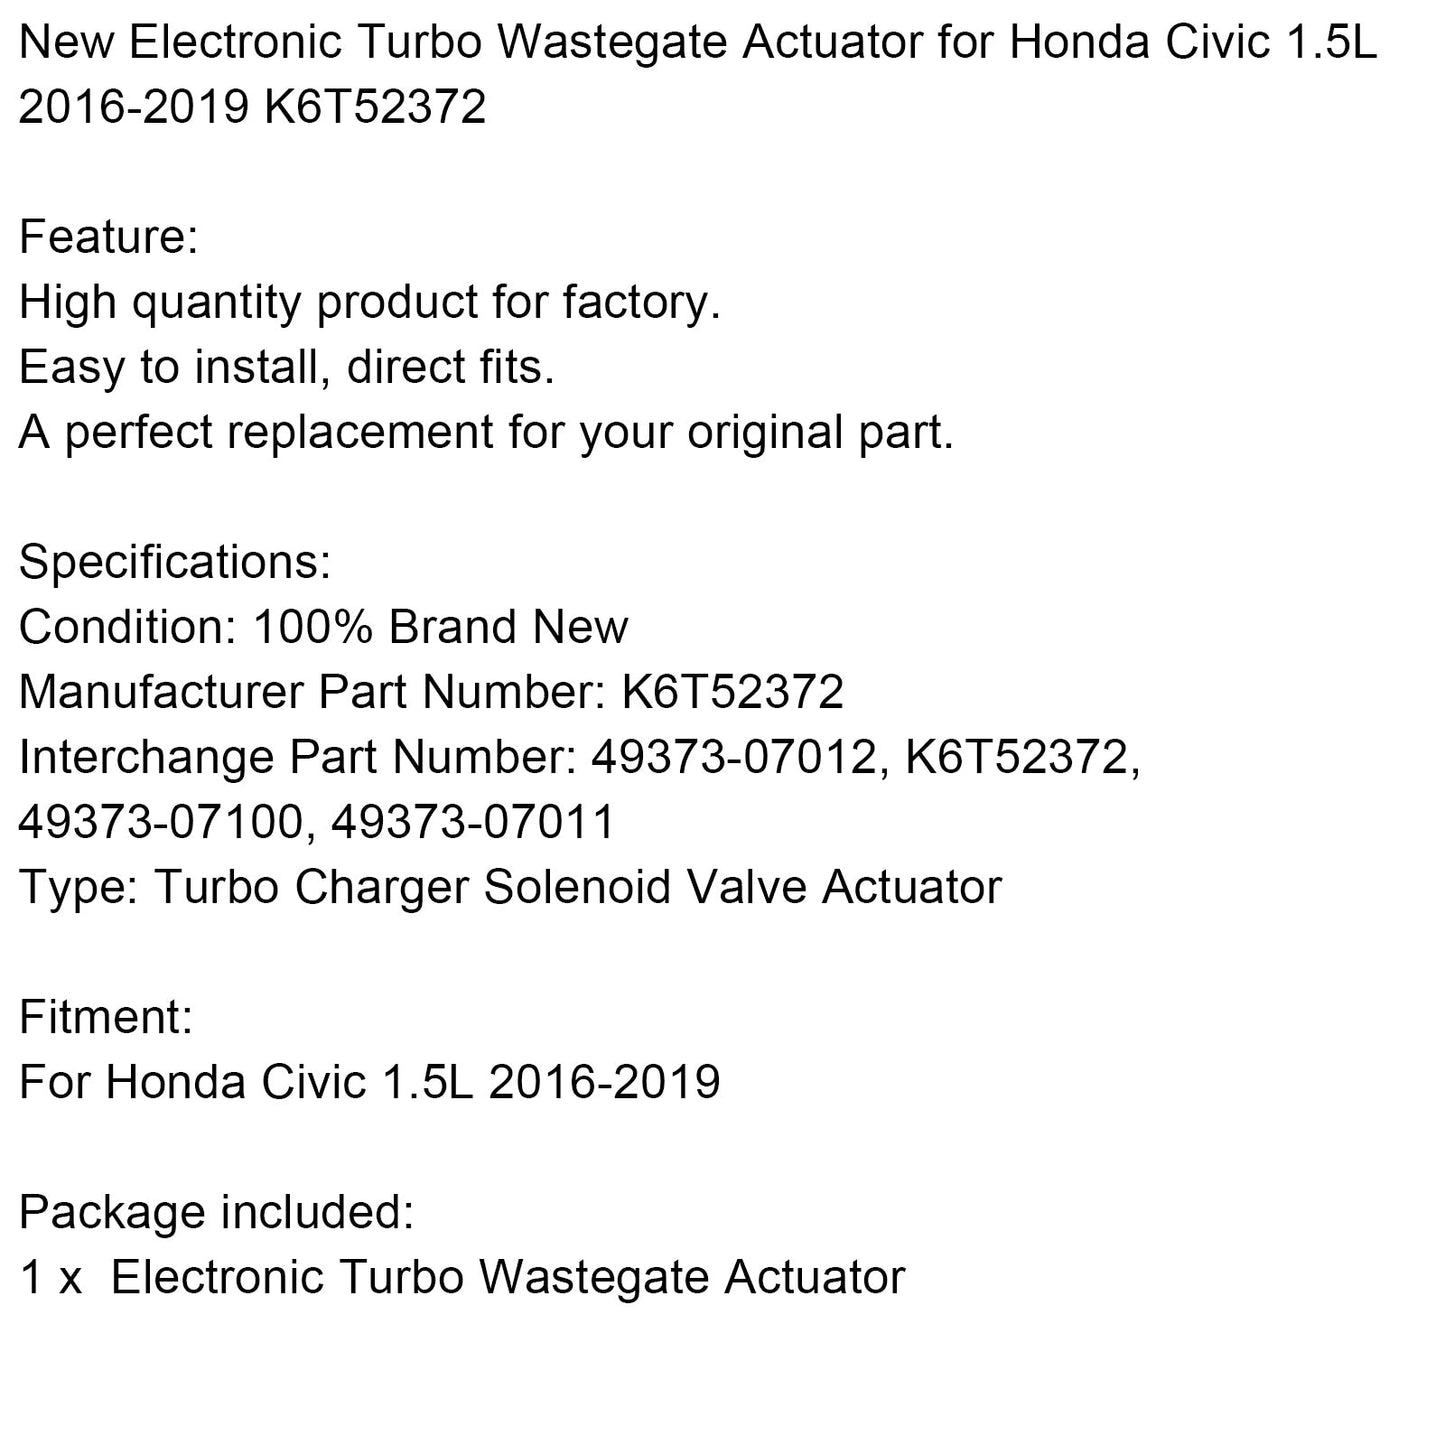 Actionneur électronique Turbo Wastegate pour Honda Civic 1.5L 2016-2019 K6T52372 CP générique